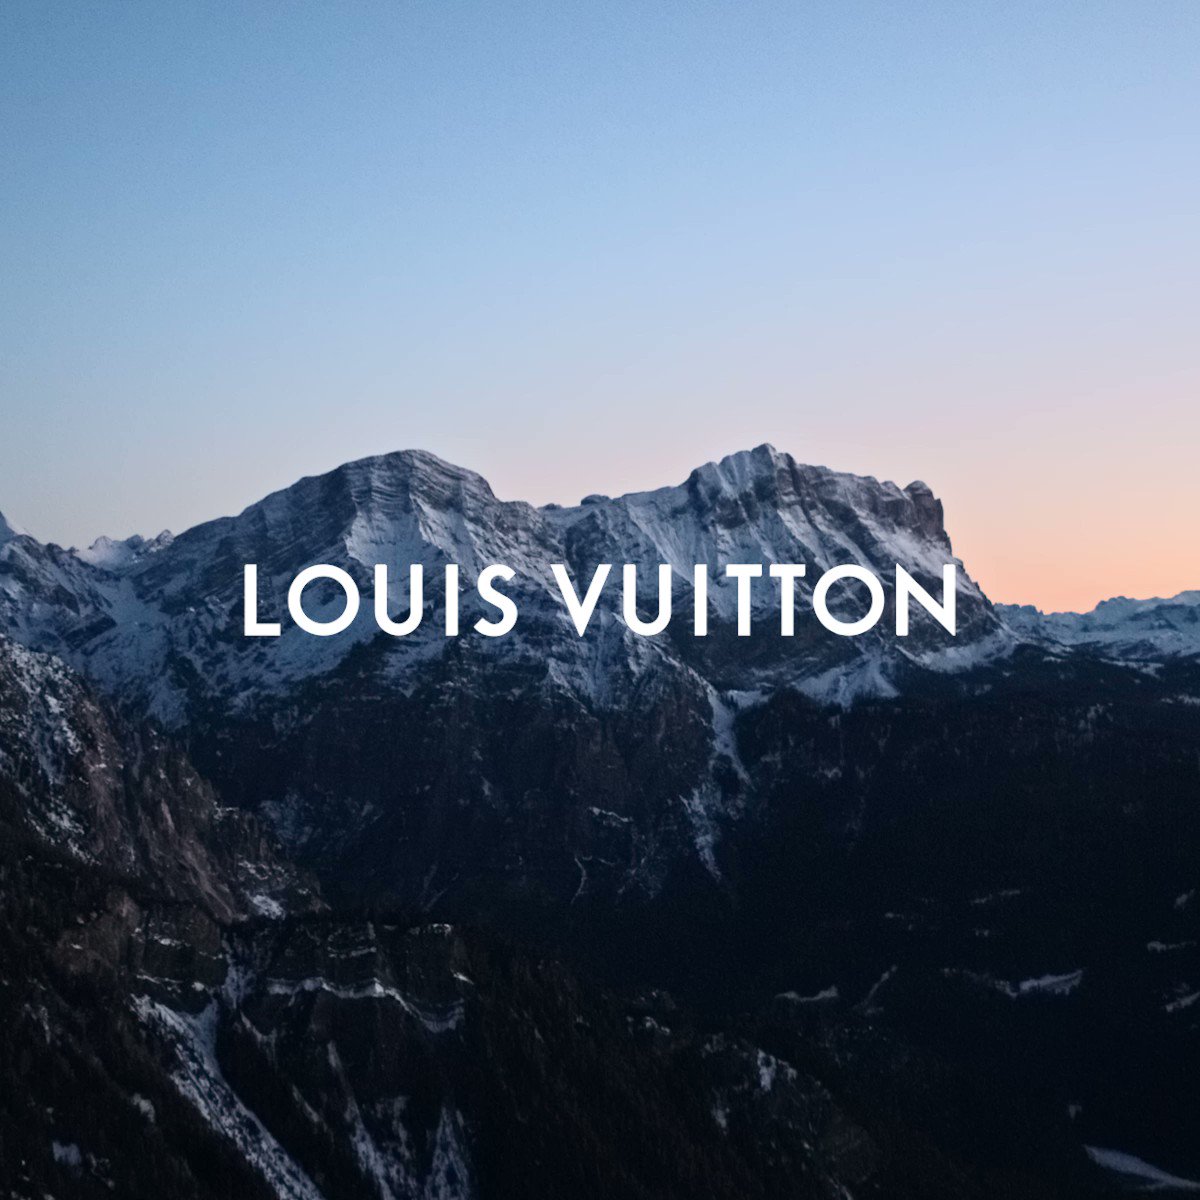 Louis Vuitton on X: #EileenGu and the Twist. The freeski champion